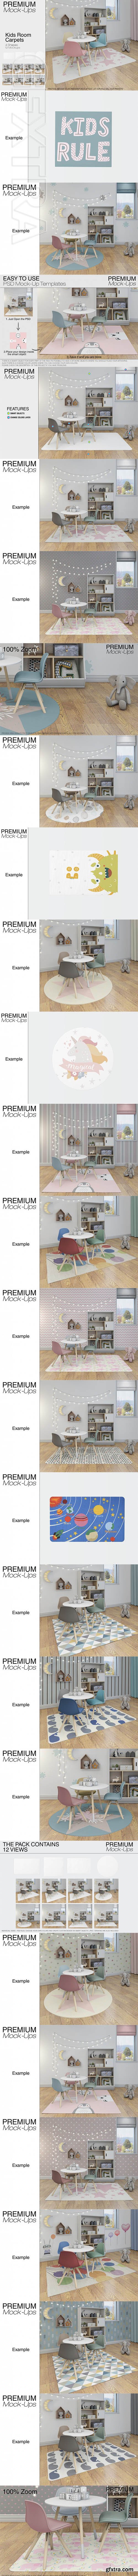 GR - Kids Room Carpets - 4 Shapes